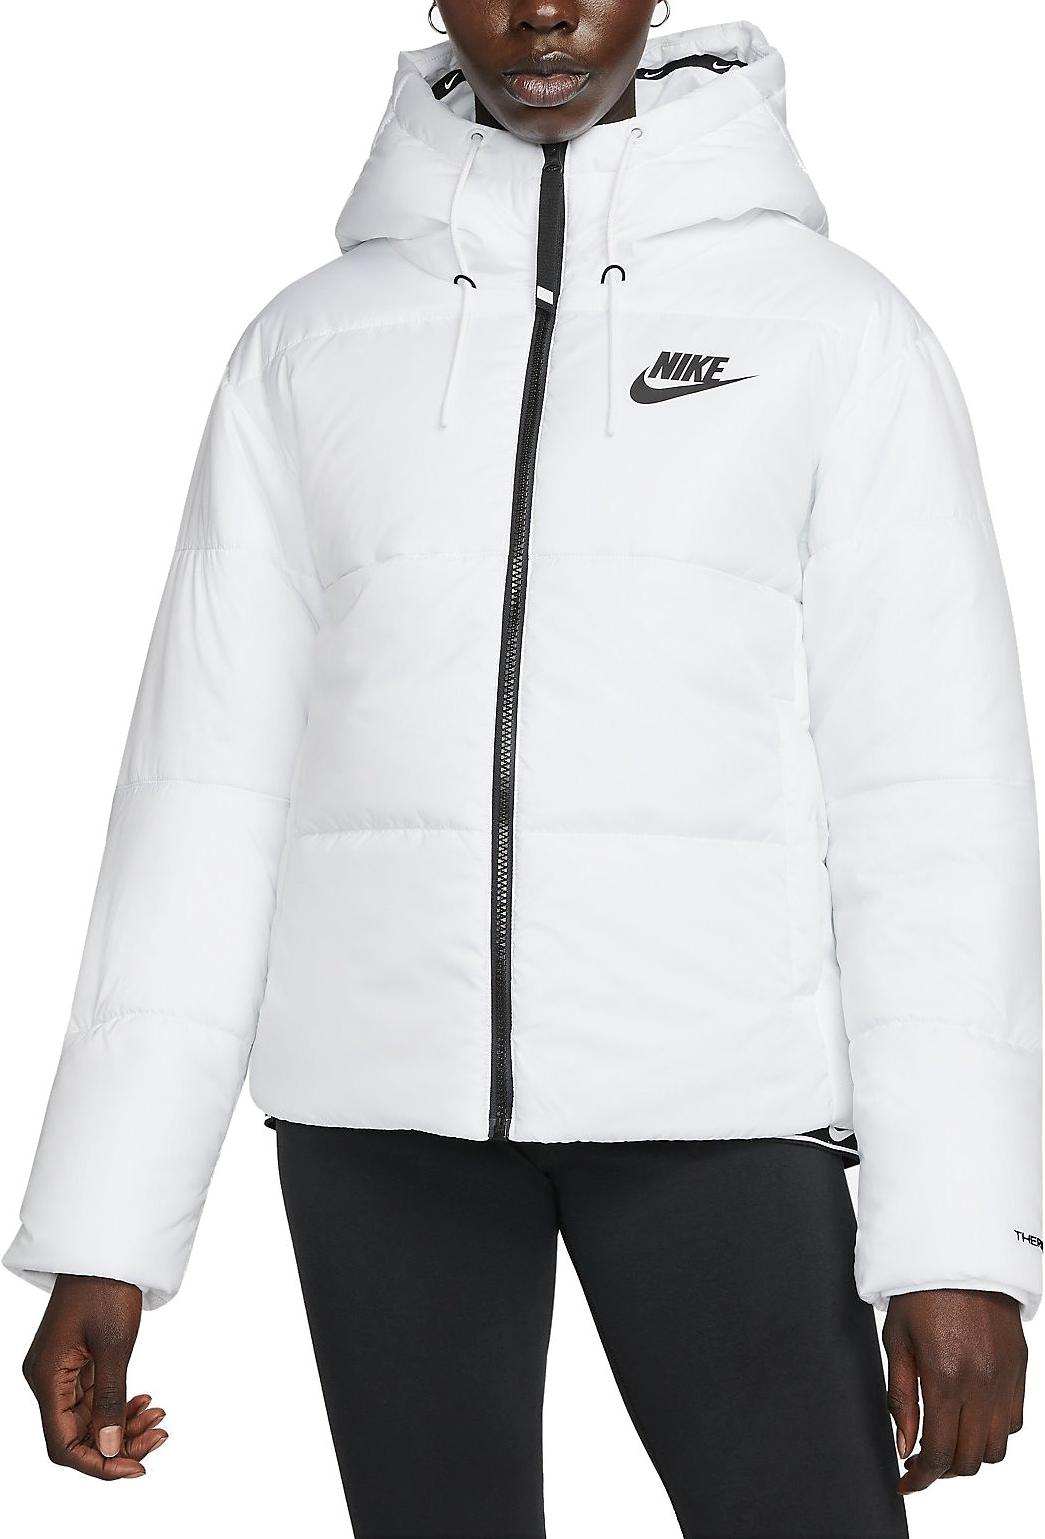 Women Jacket s Repel Therma-FIT Nike Sportswear Hooded